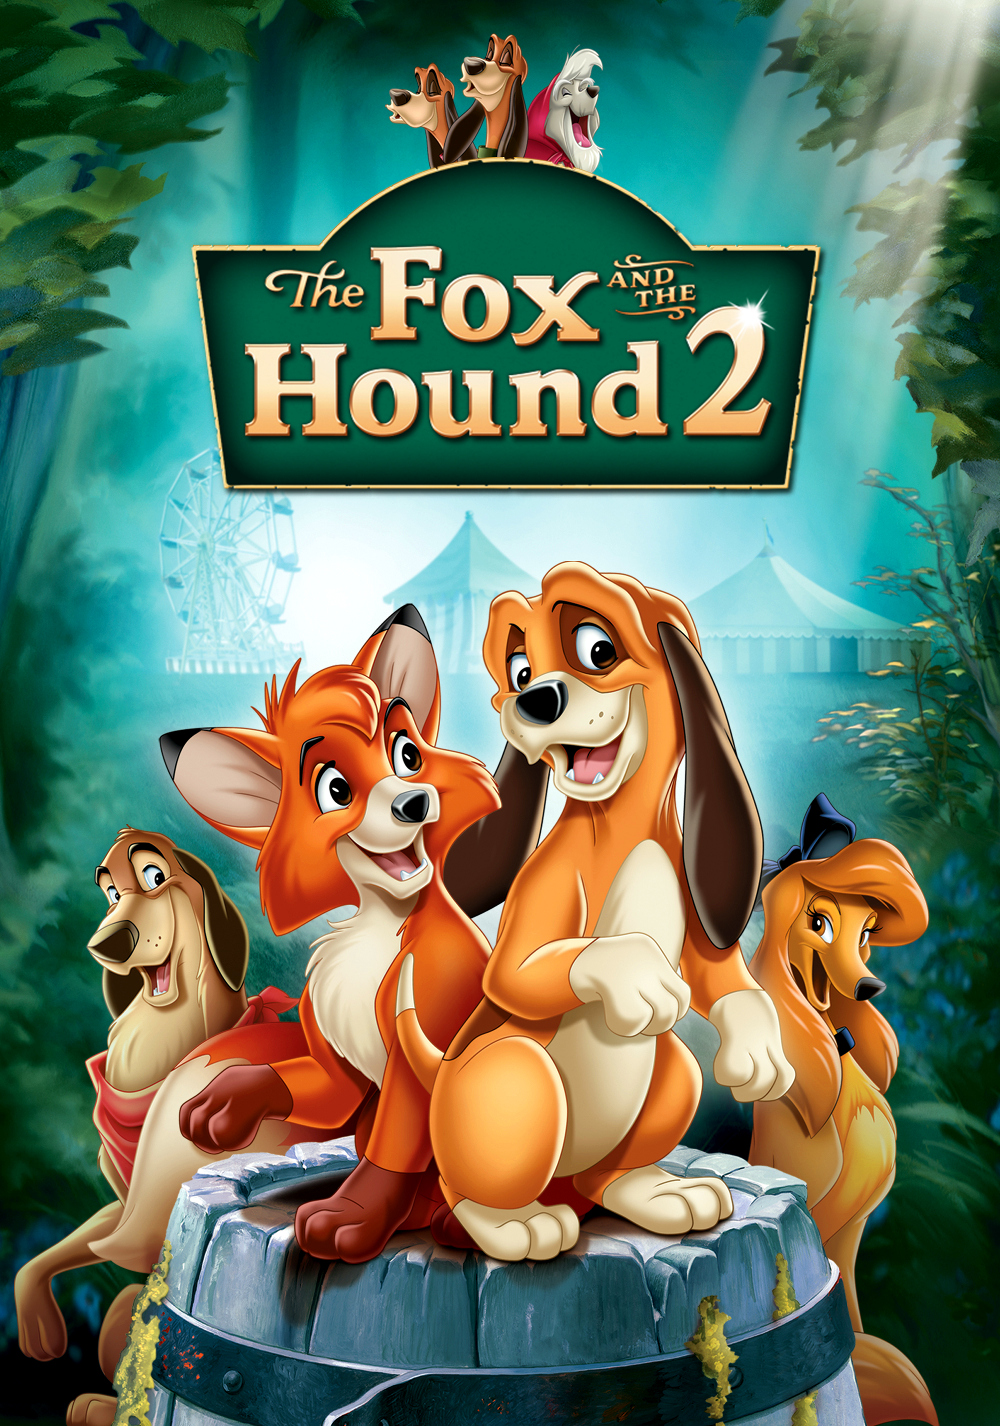 ดูหนังออนไลน์HD The Fox and the Hound 2 (2006) เพื่อนแท้ในป่าใหญ่ 2 หนังเต็มเรื่อง หนังมาสเตอร์ ดูหนังHD ดูหนังออนไลน์ ดูหนังใหม่